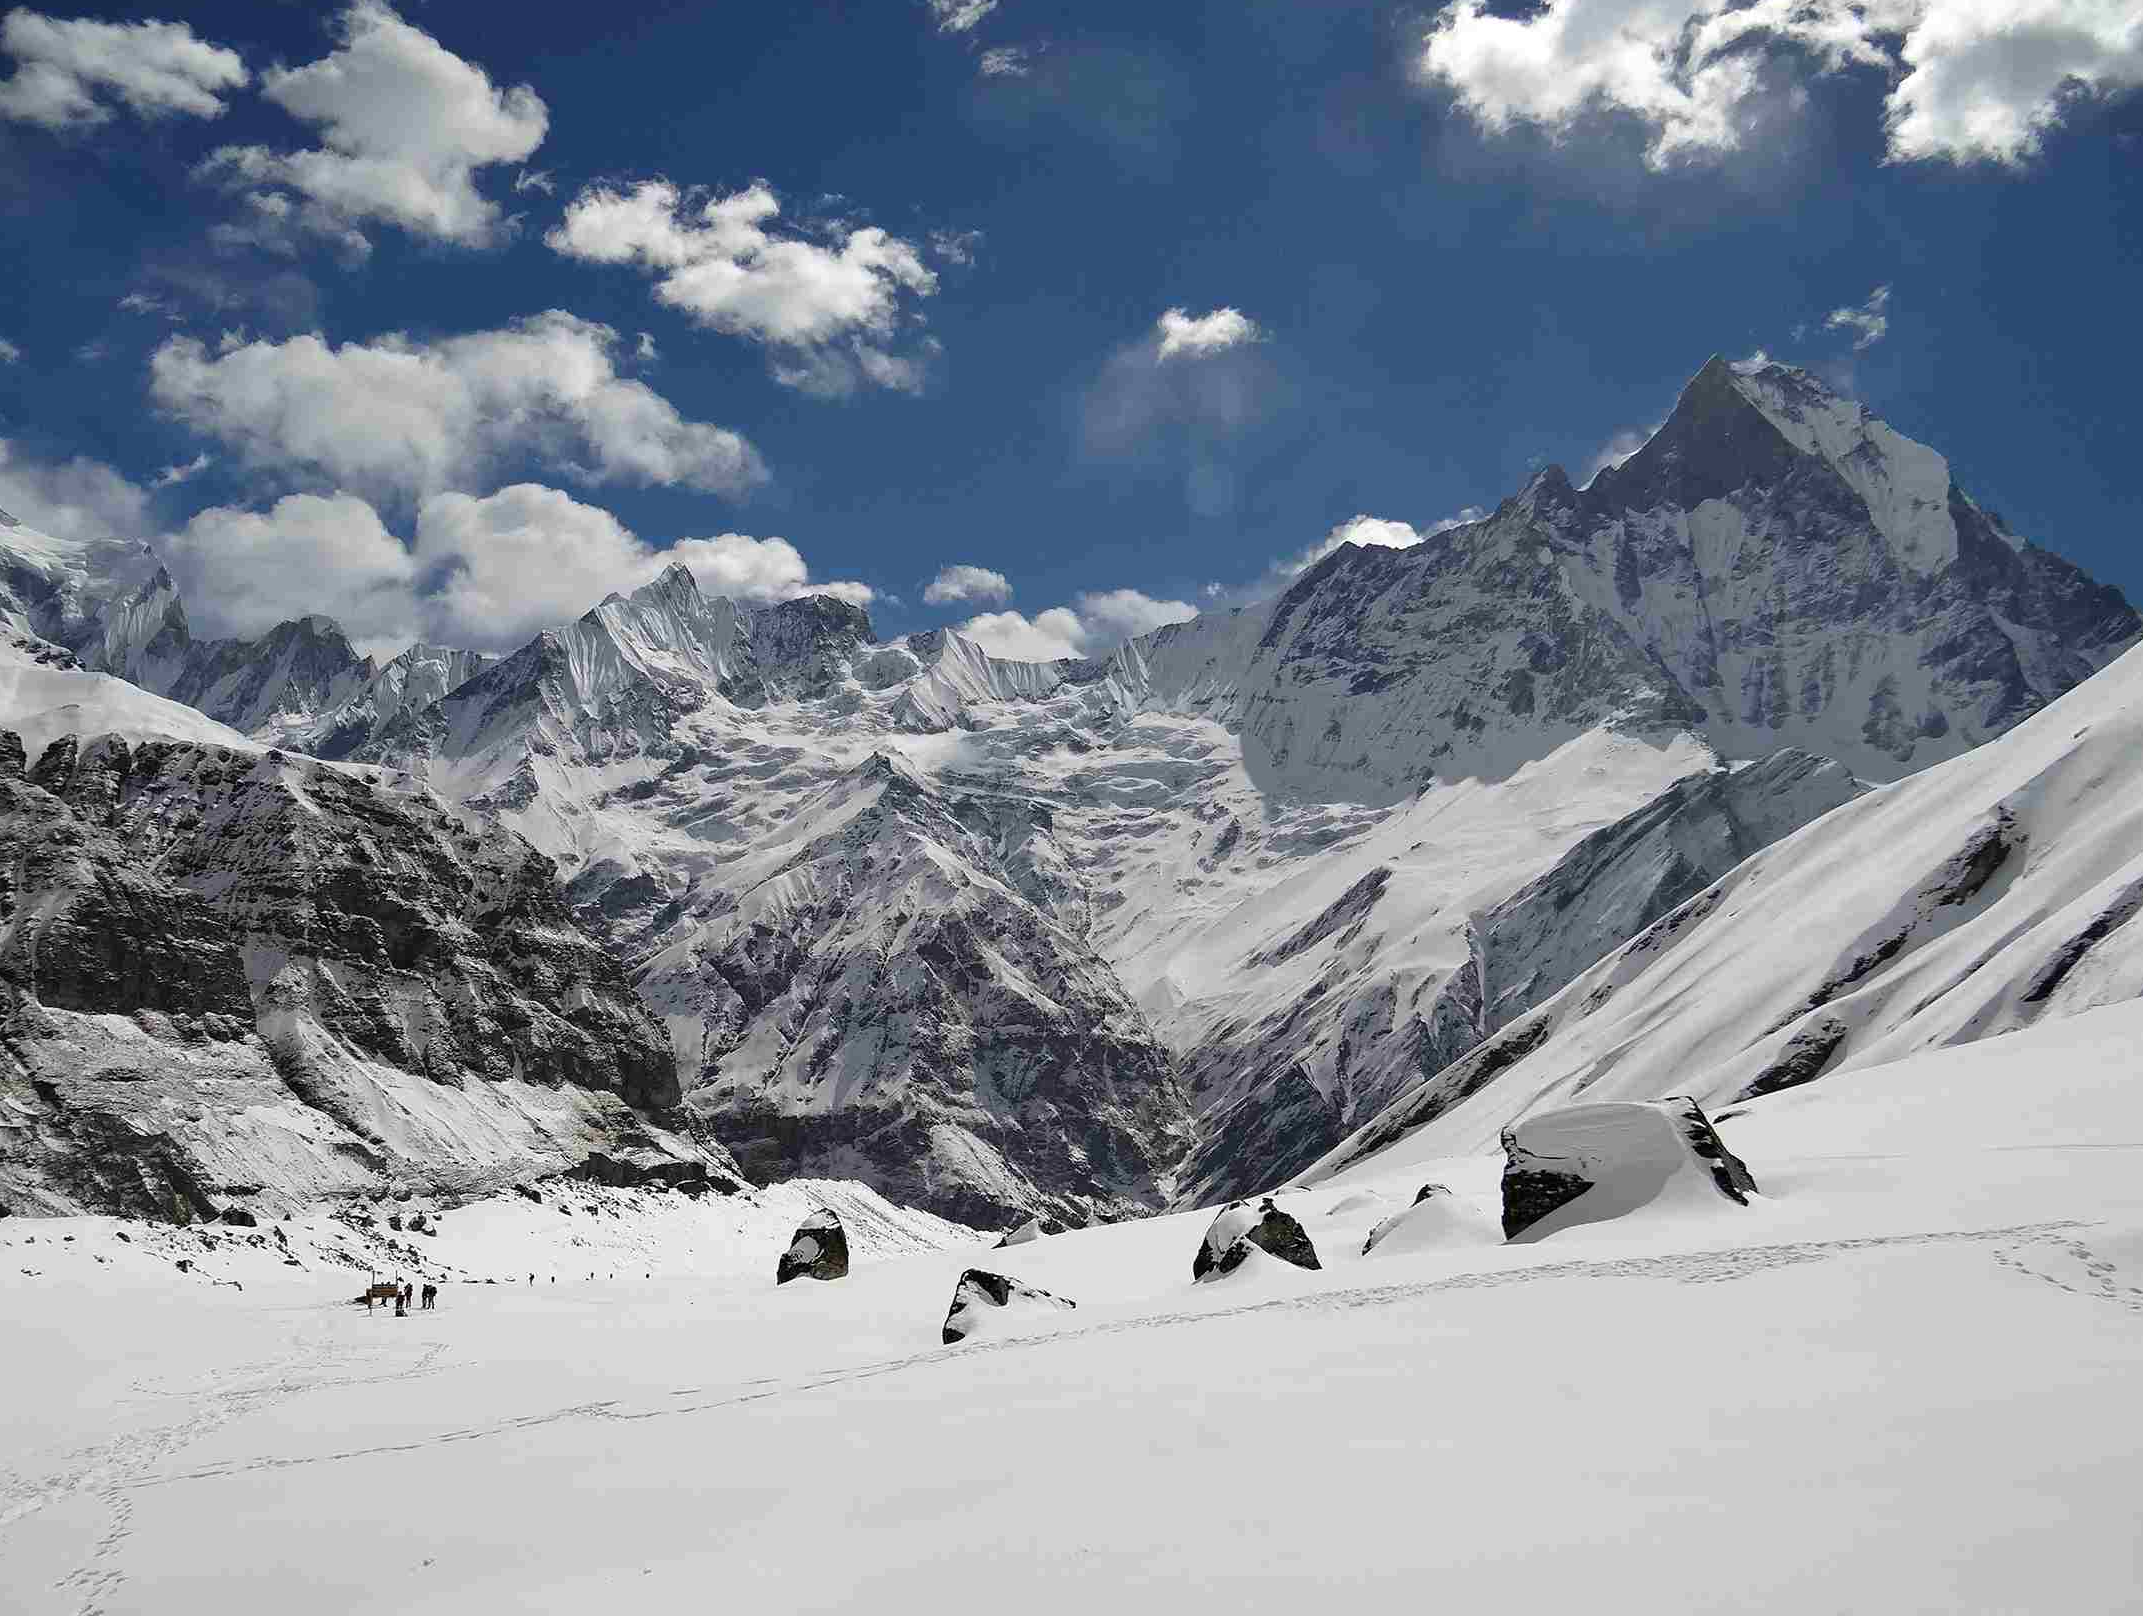 Mount Trekking to Himalayas